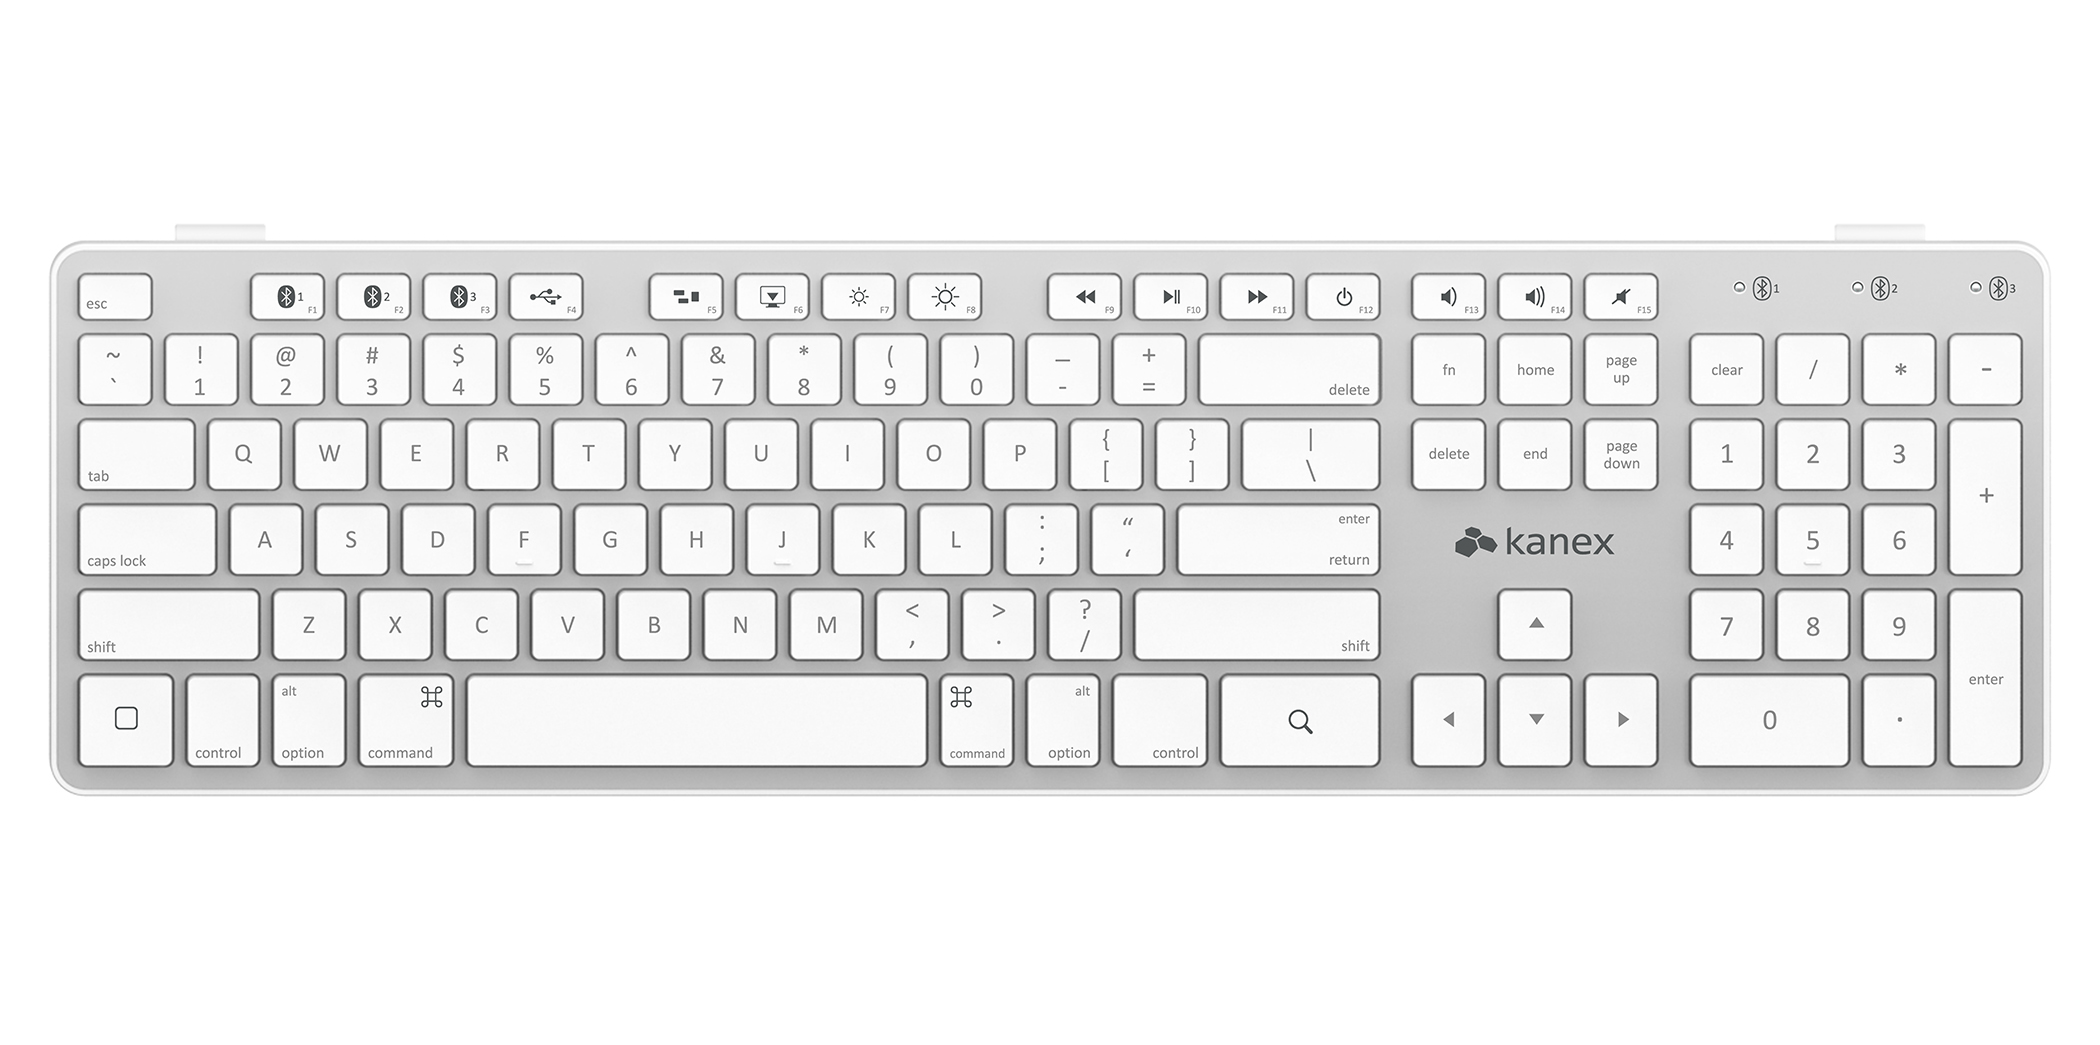 mac keyboard clipart - photo #48